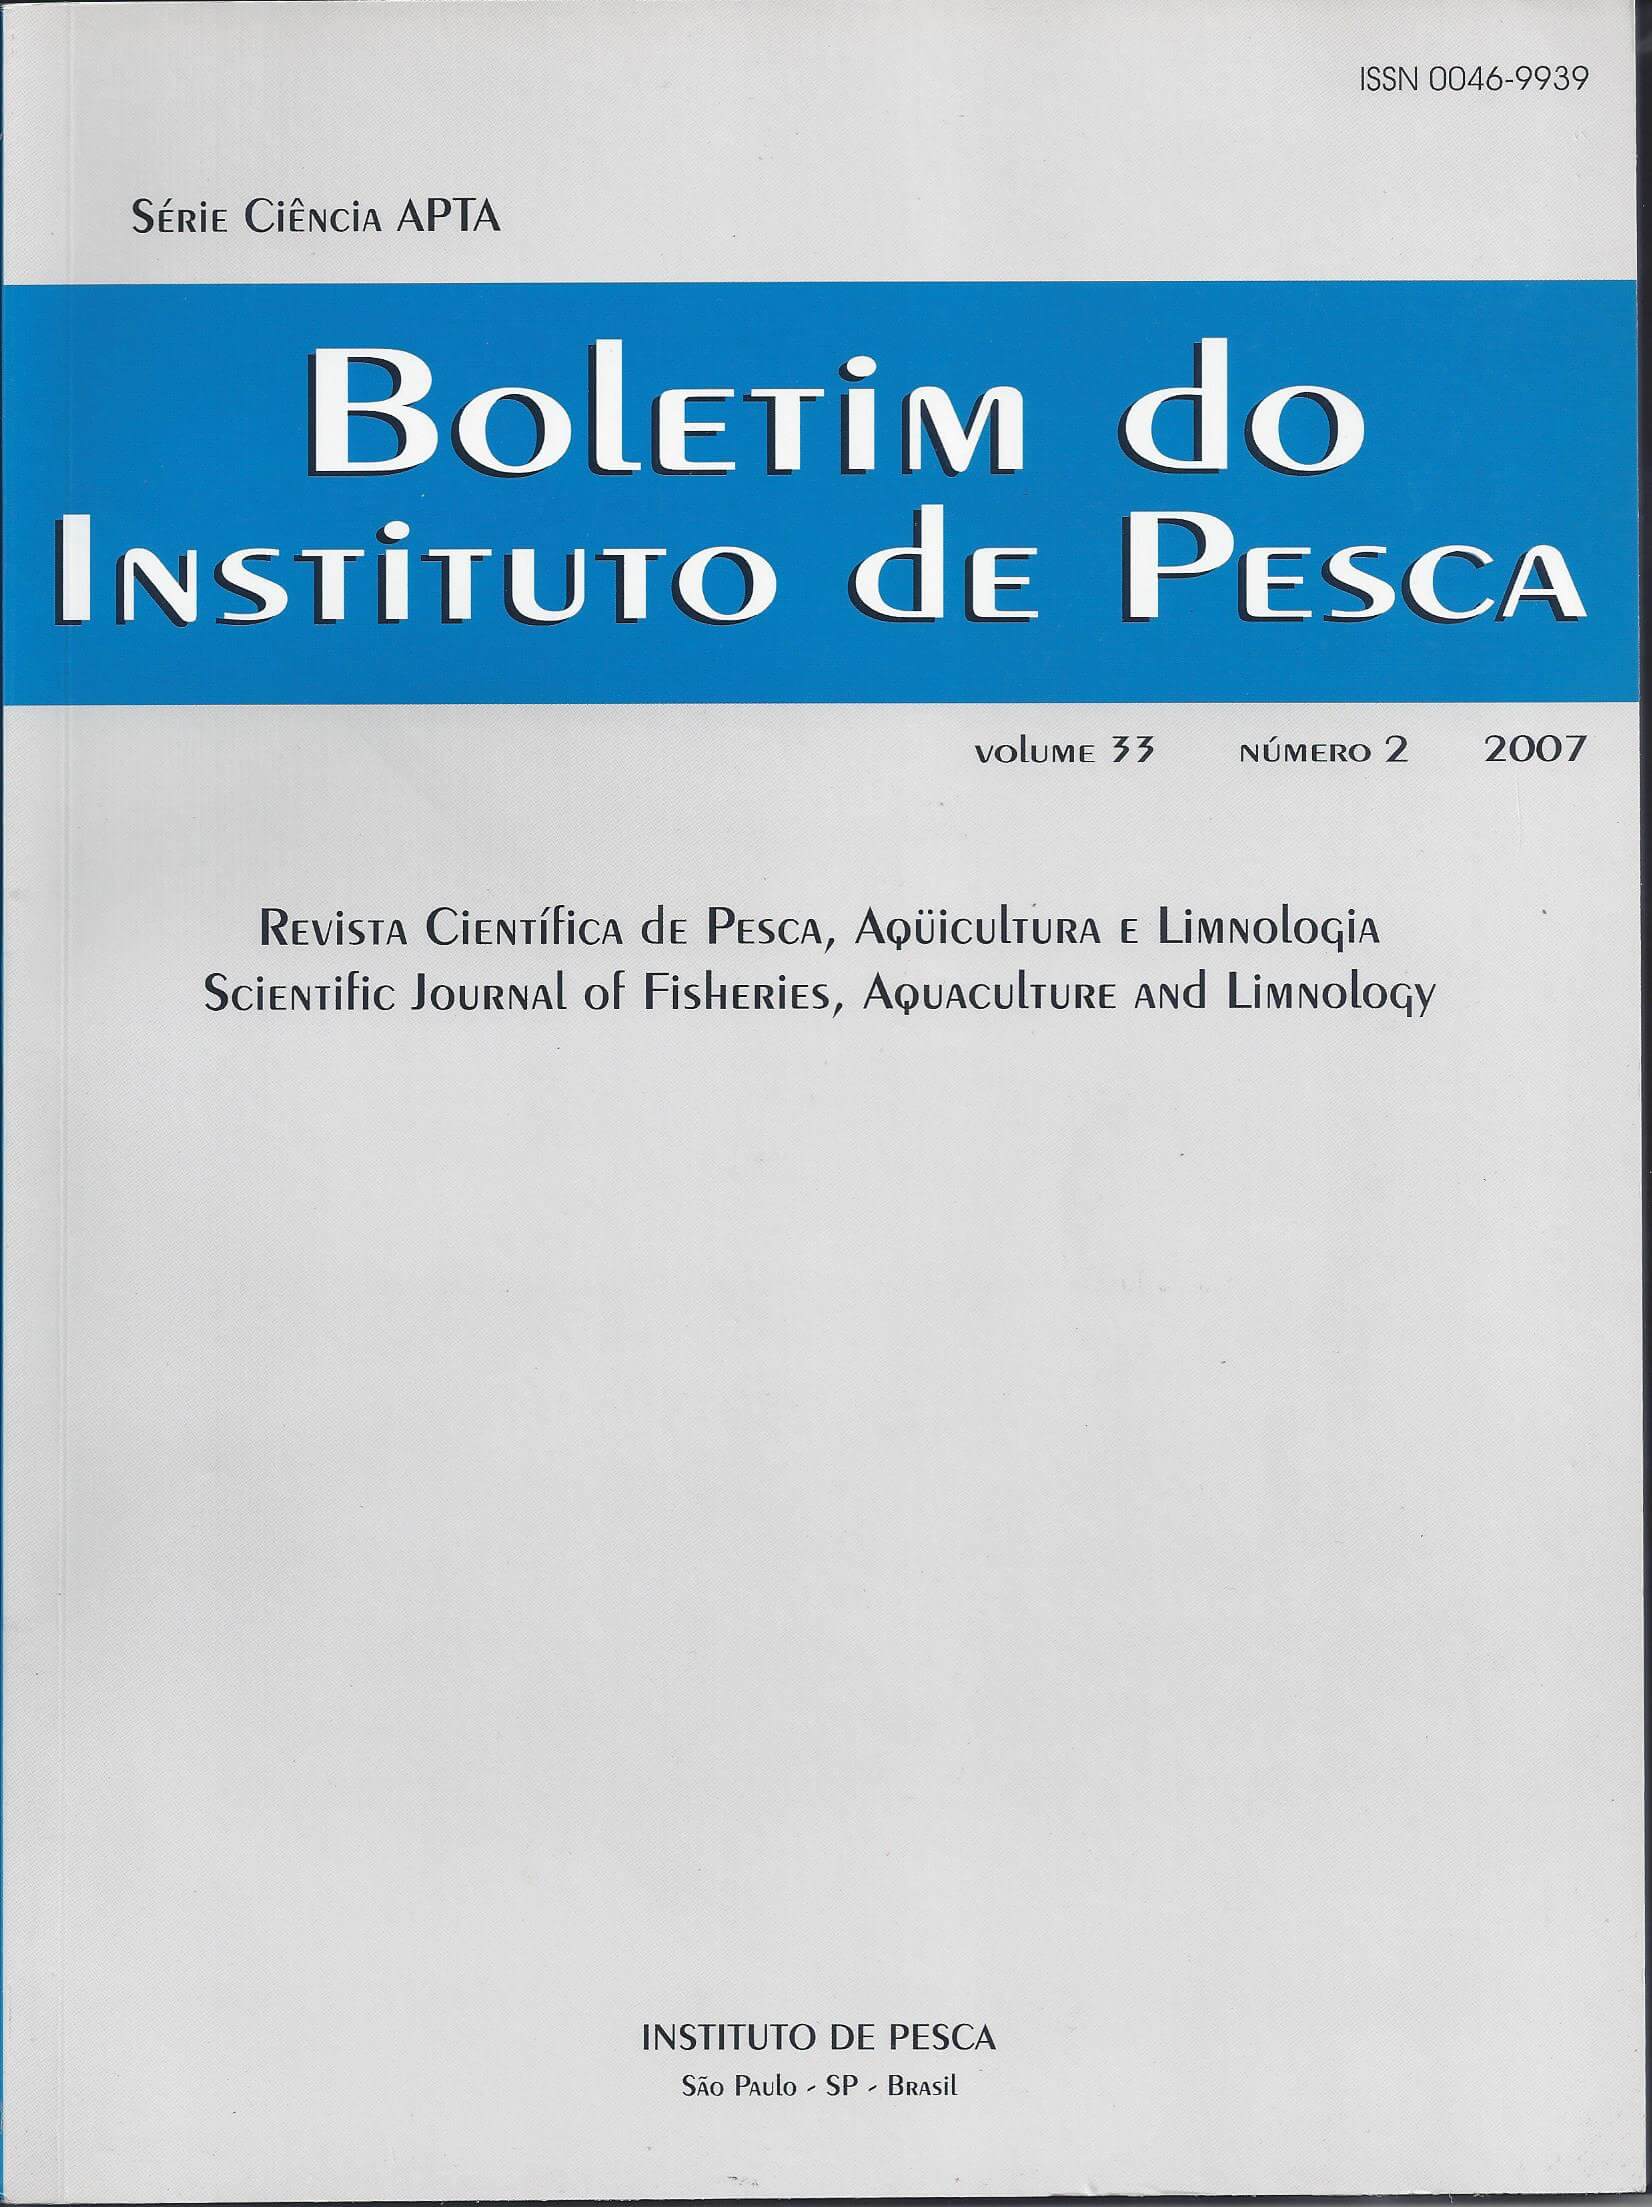 					View Vol. 33 No. 2 (2007): BOLETIM DO INSTITUTO DE PESCA
				